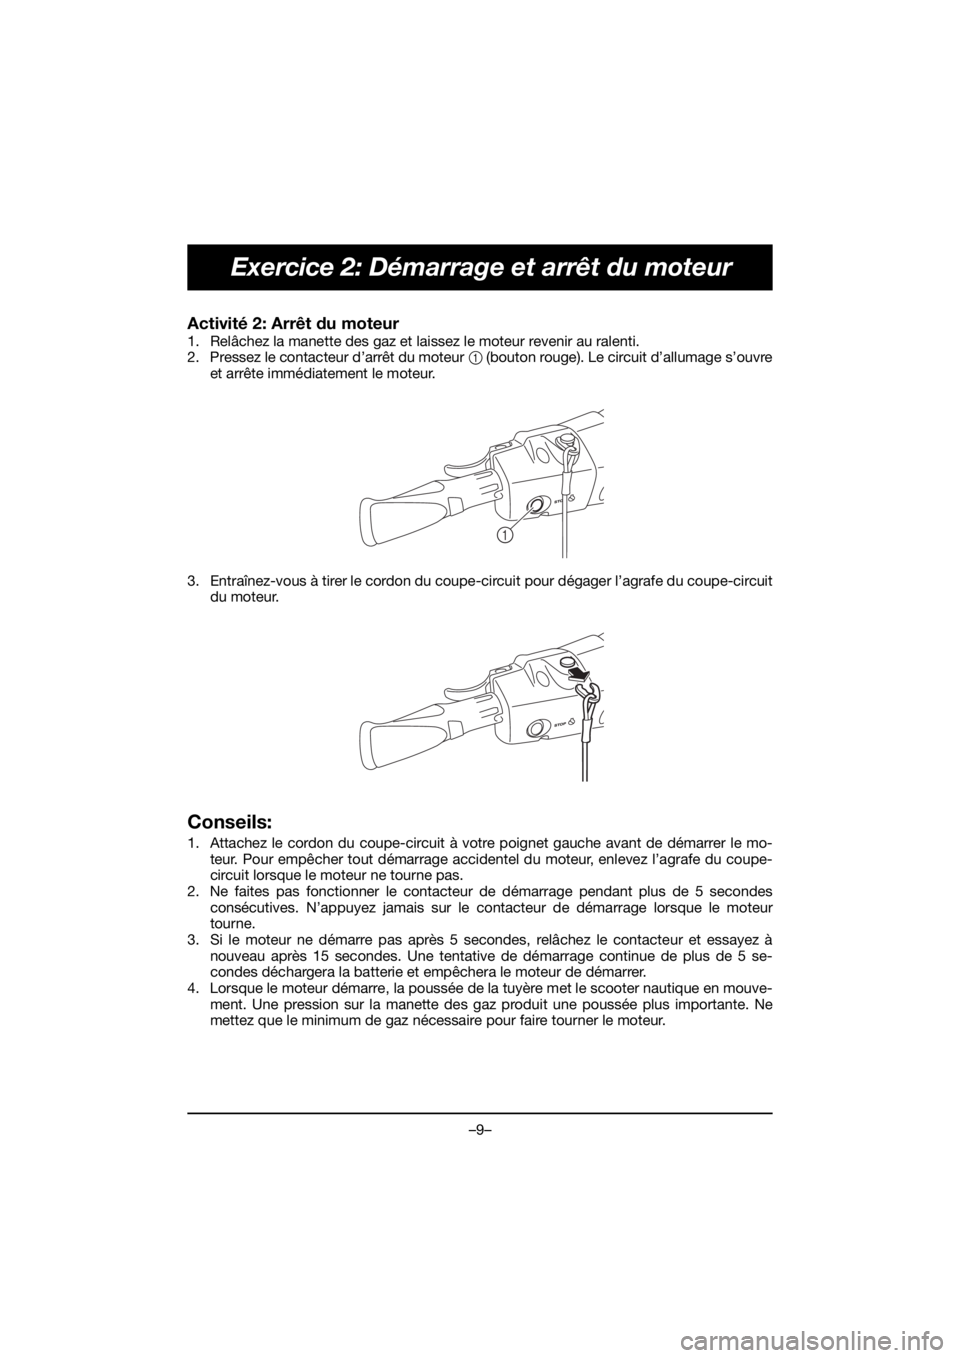 YAMAHA EXR 2020  Notices Demploi (in French) –9–
Exercice 2: Démarrage et arrêt du moteur
Activité 2: Arrêt du moteur 
1. Relâchez la manette des gaz et laissez le moteur revenir au ralenti. 
2. Pressez le contacteur d’arrêt du moteu